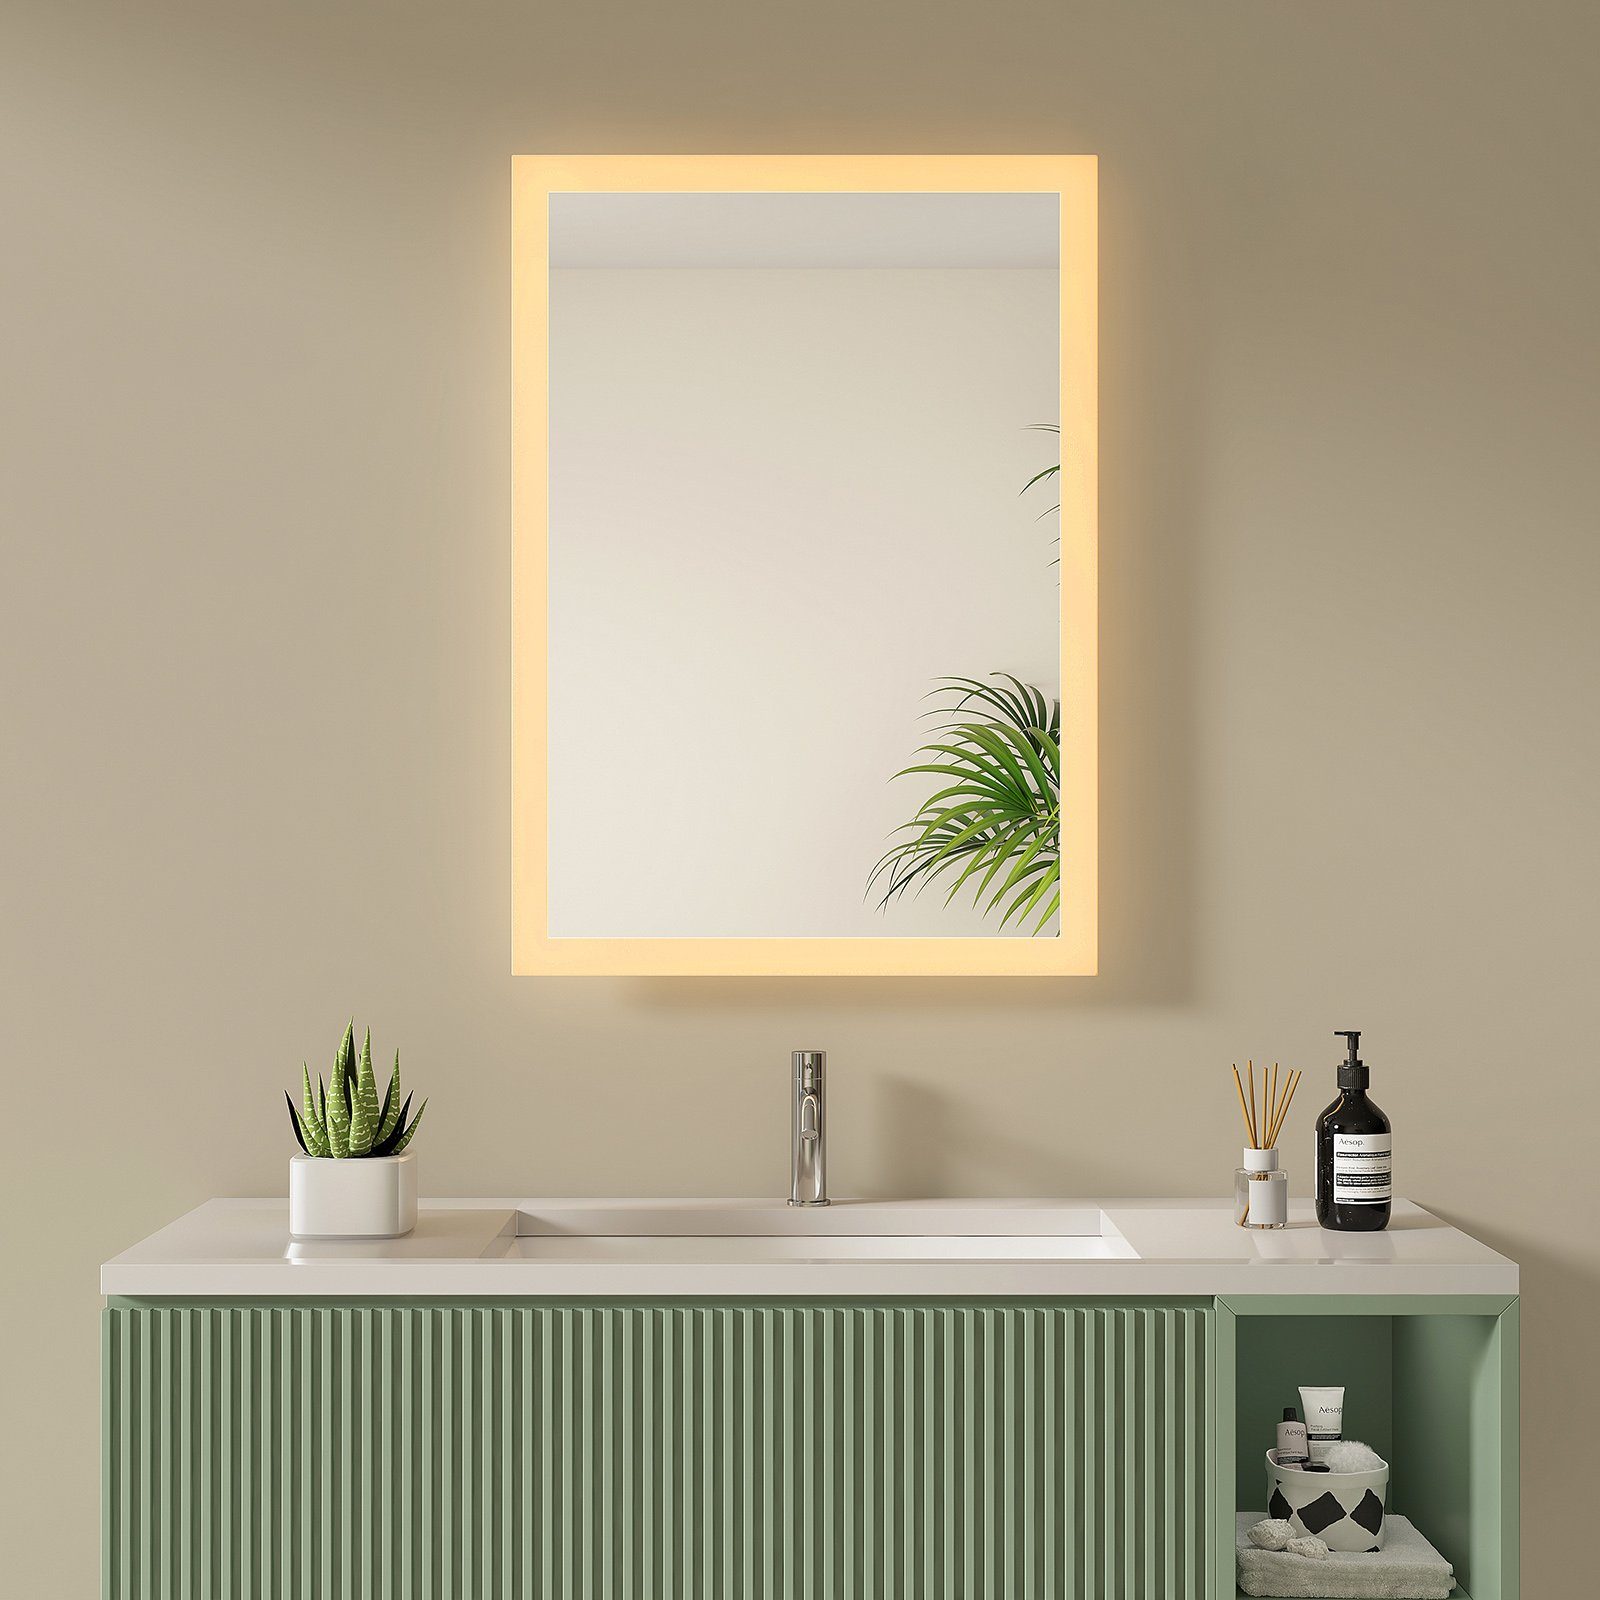 S'AFIELINA Badspiegel LED Badspiegel mit Beleuchtung Kosmetikspiegel Wandspiegel, Wandschalter,Warmweiß 3000K,Energiesparend, 2 Installationsmethoden